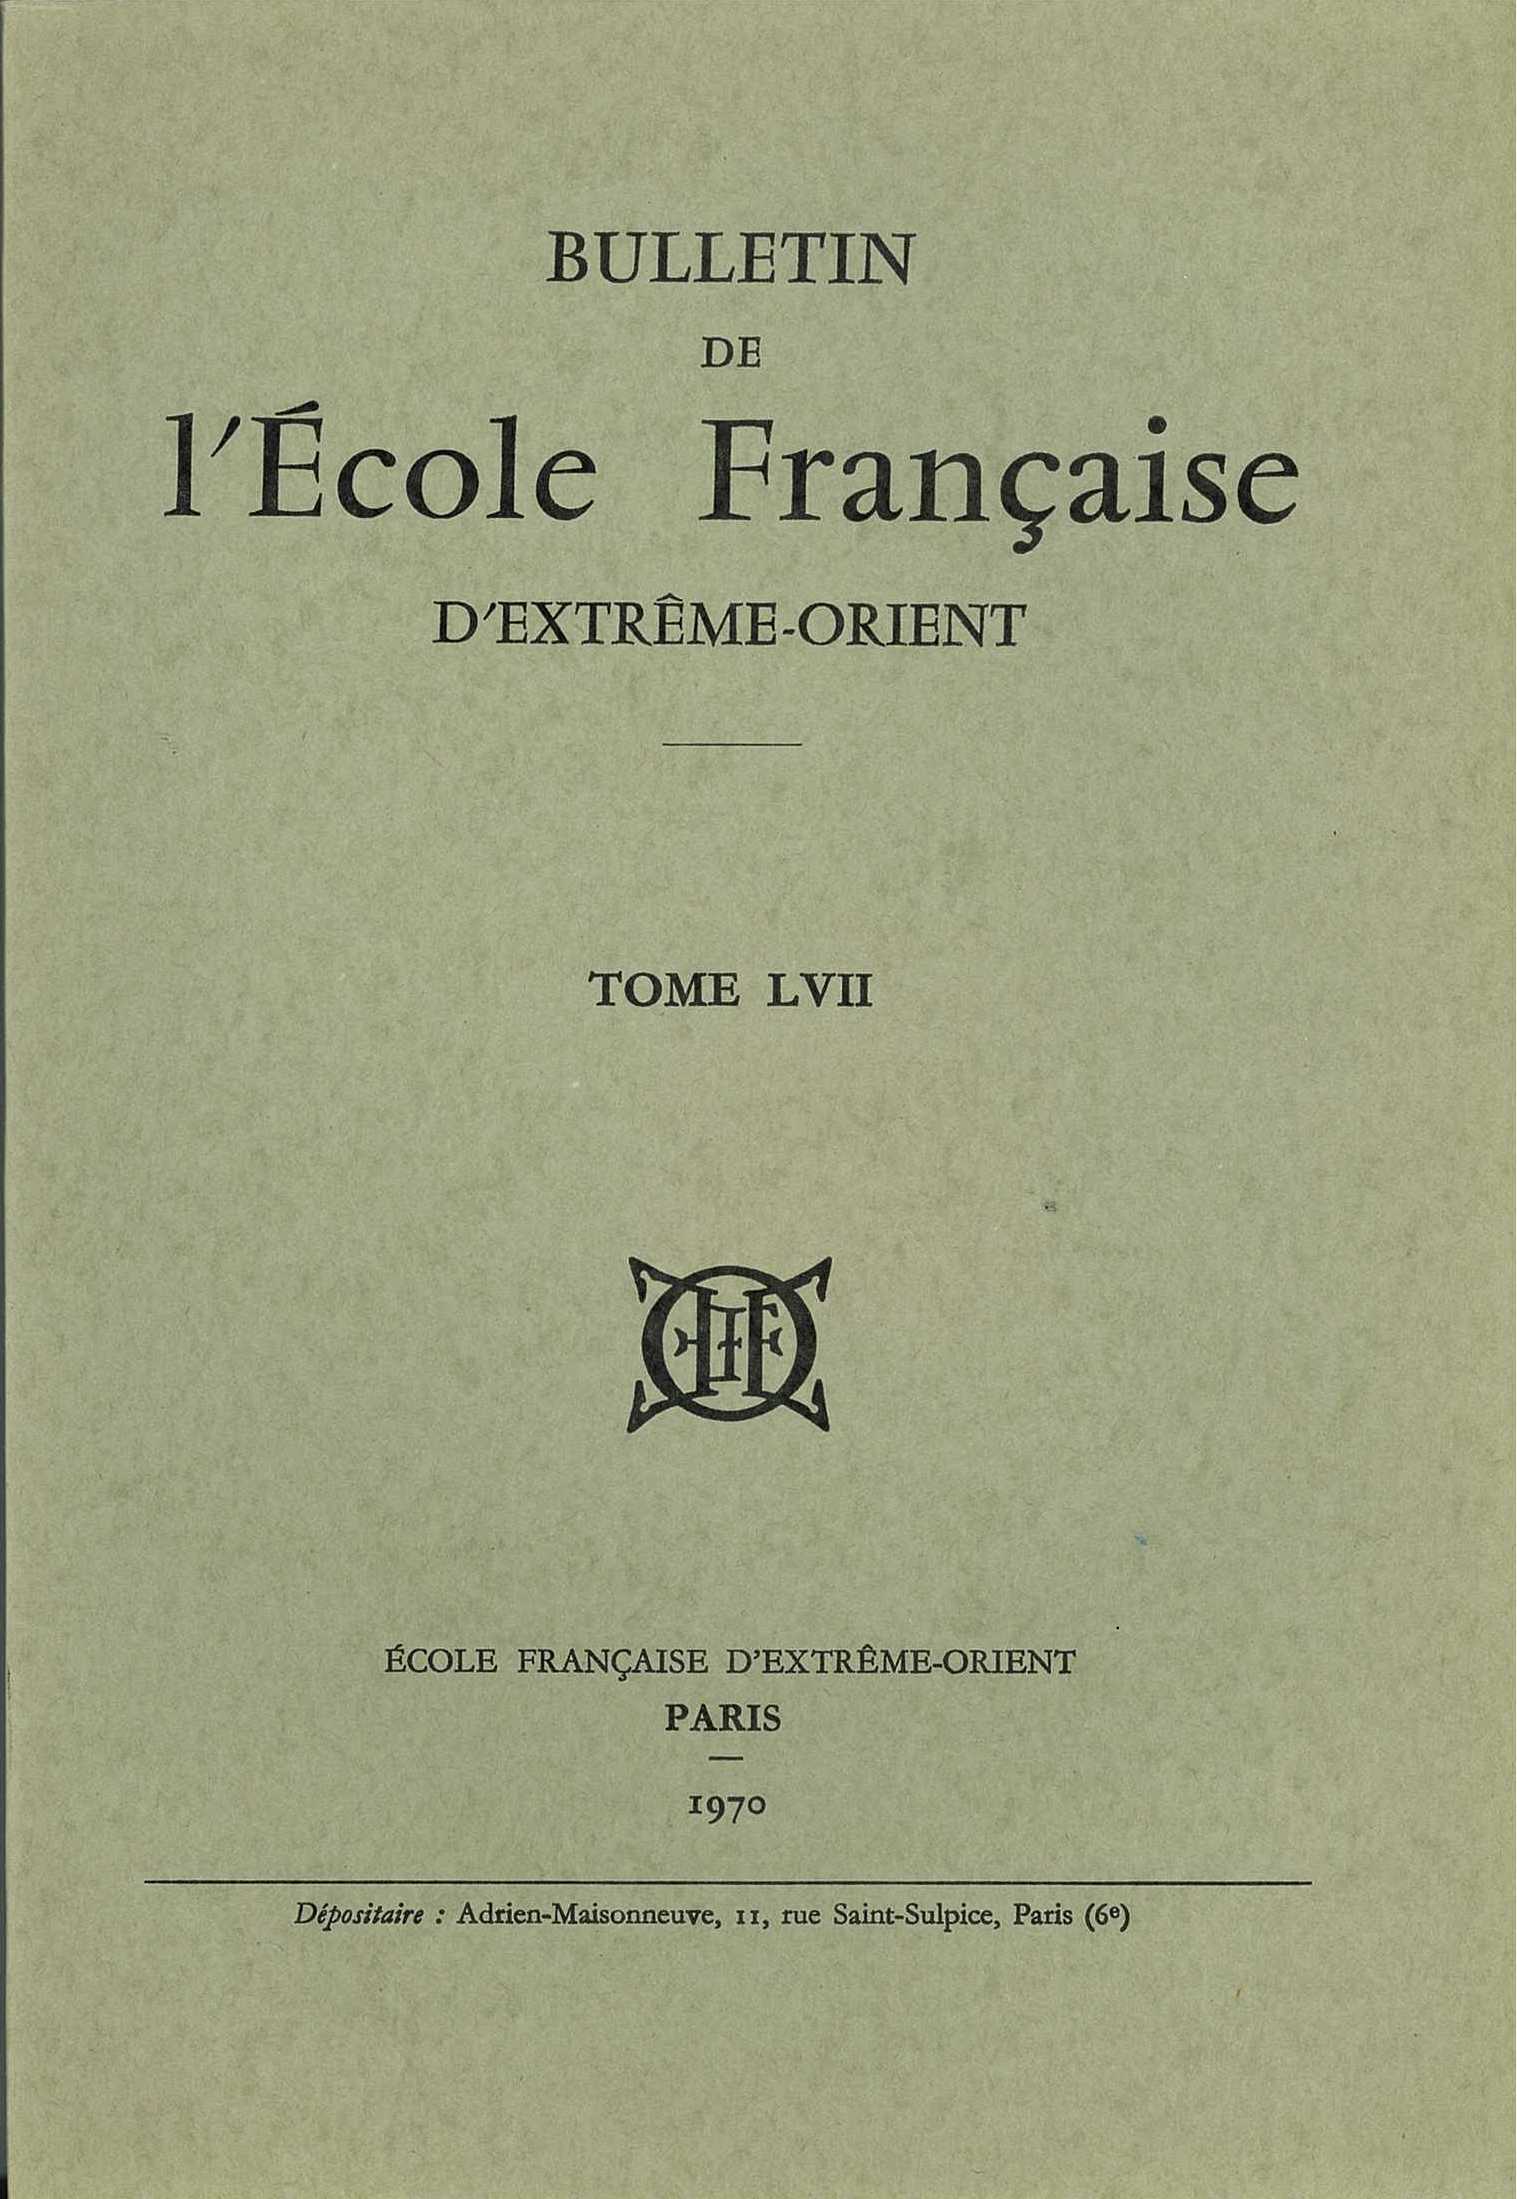 Bulletin de l'Ecole française d'Extrême-Orient 57 (1970)